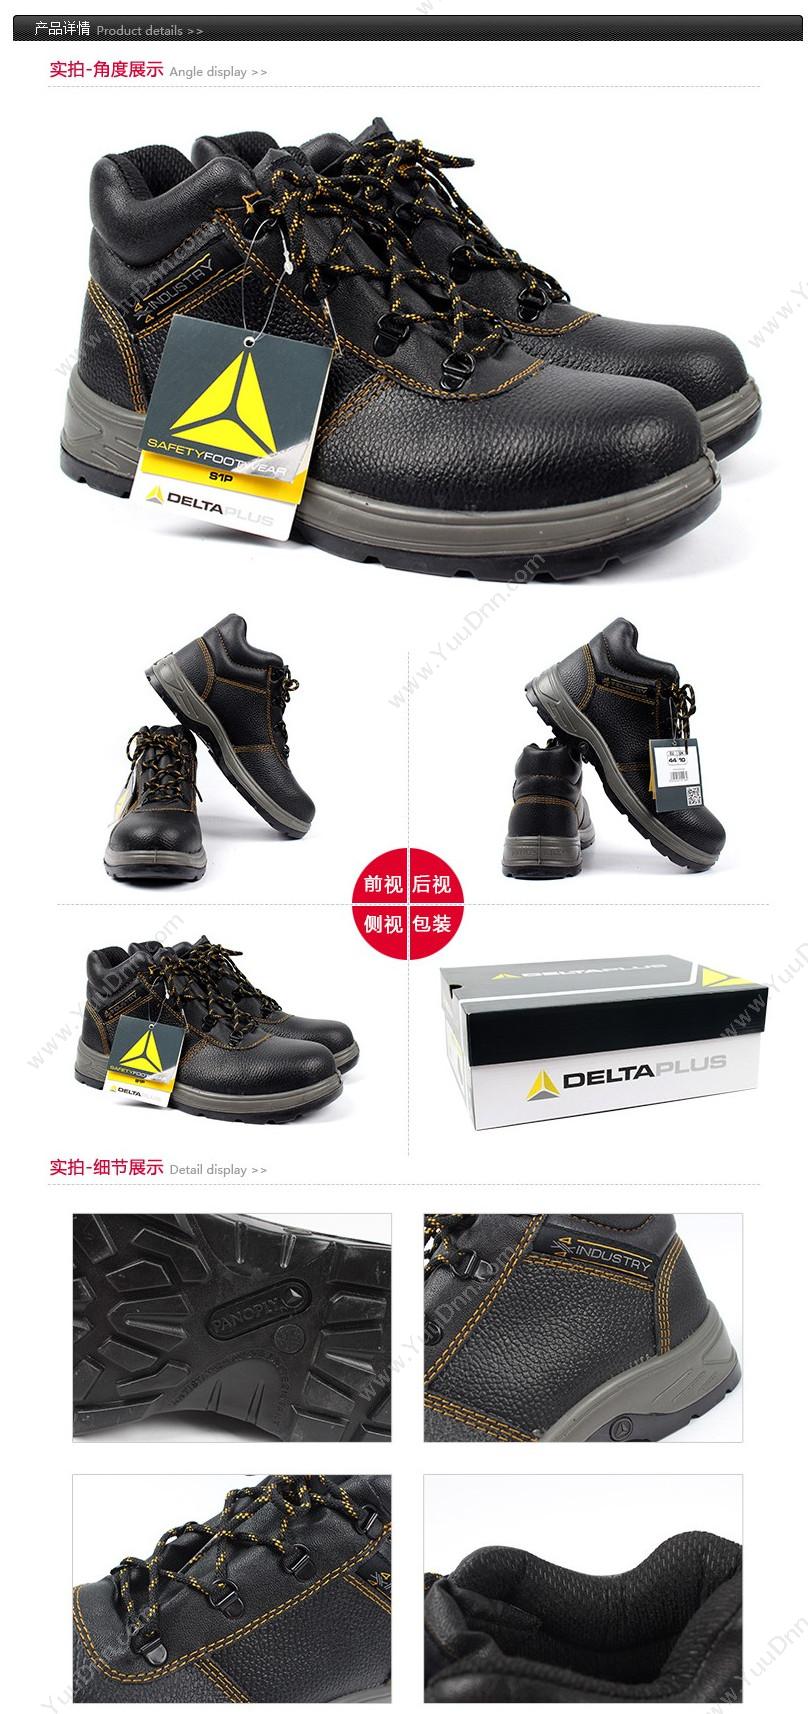 代尔塔 Delta 301904 4x4系列S1P中帮 LANTANA S1P HRO /39 （黑） 5双/箱 安全鞋